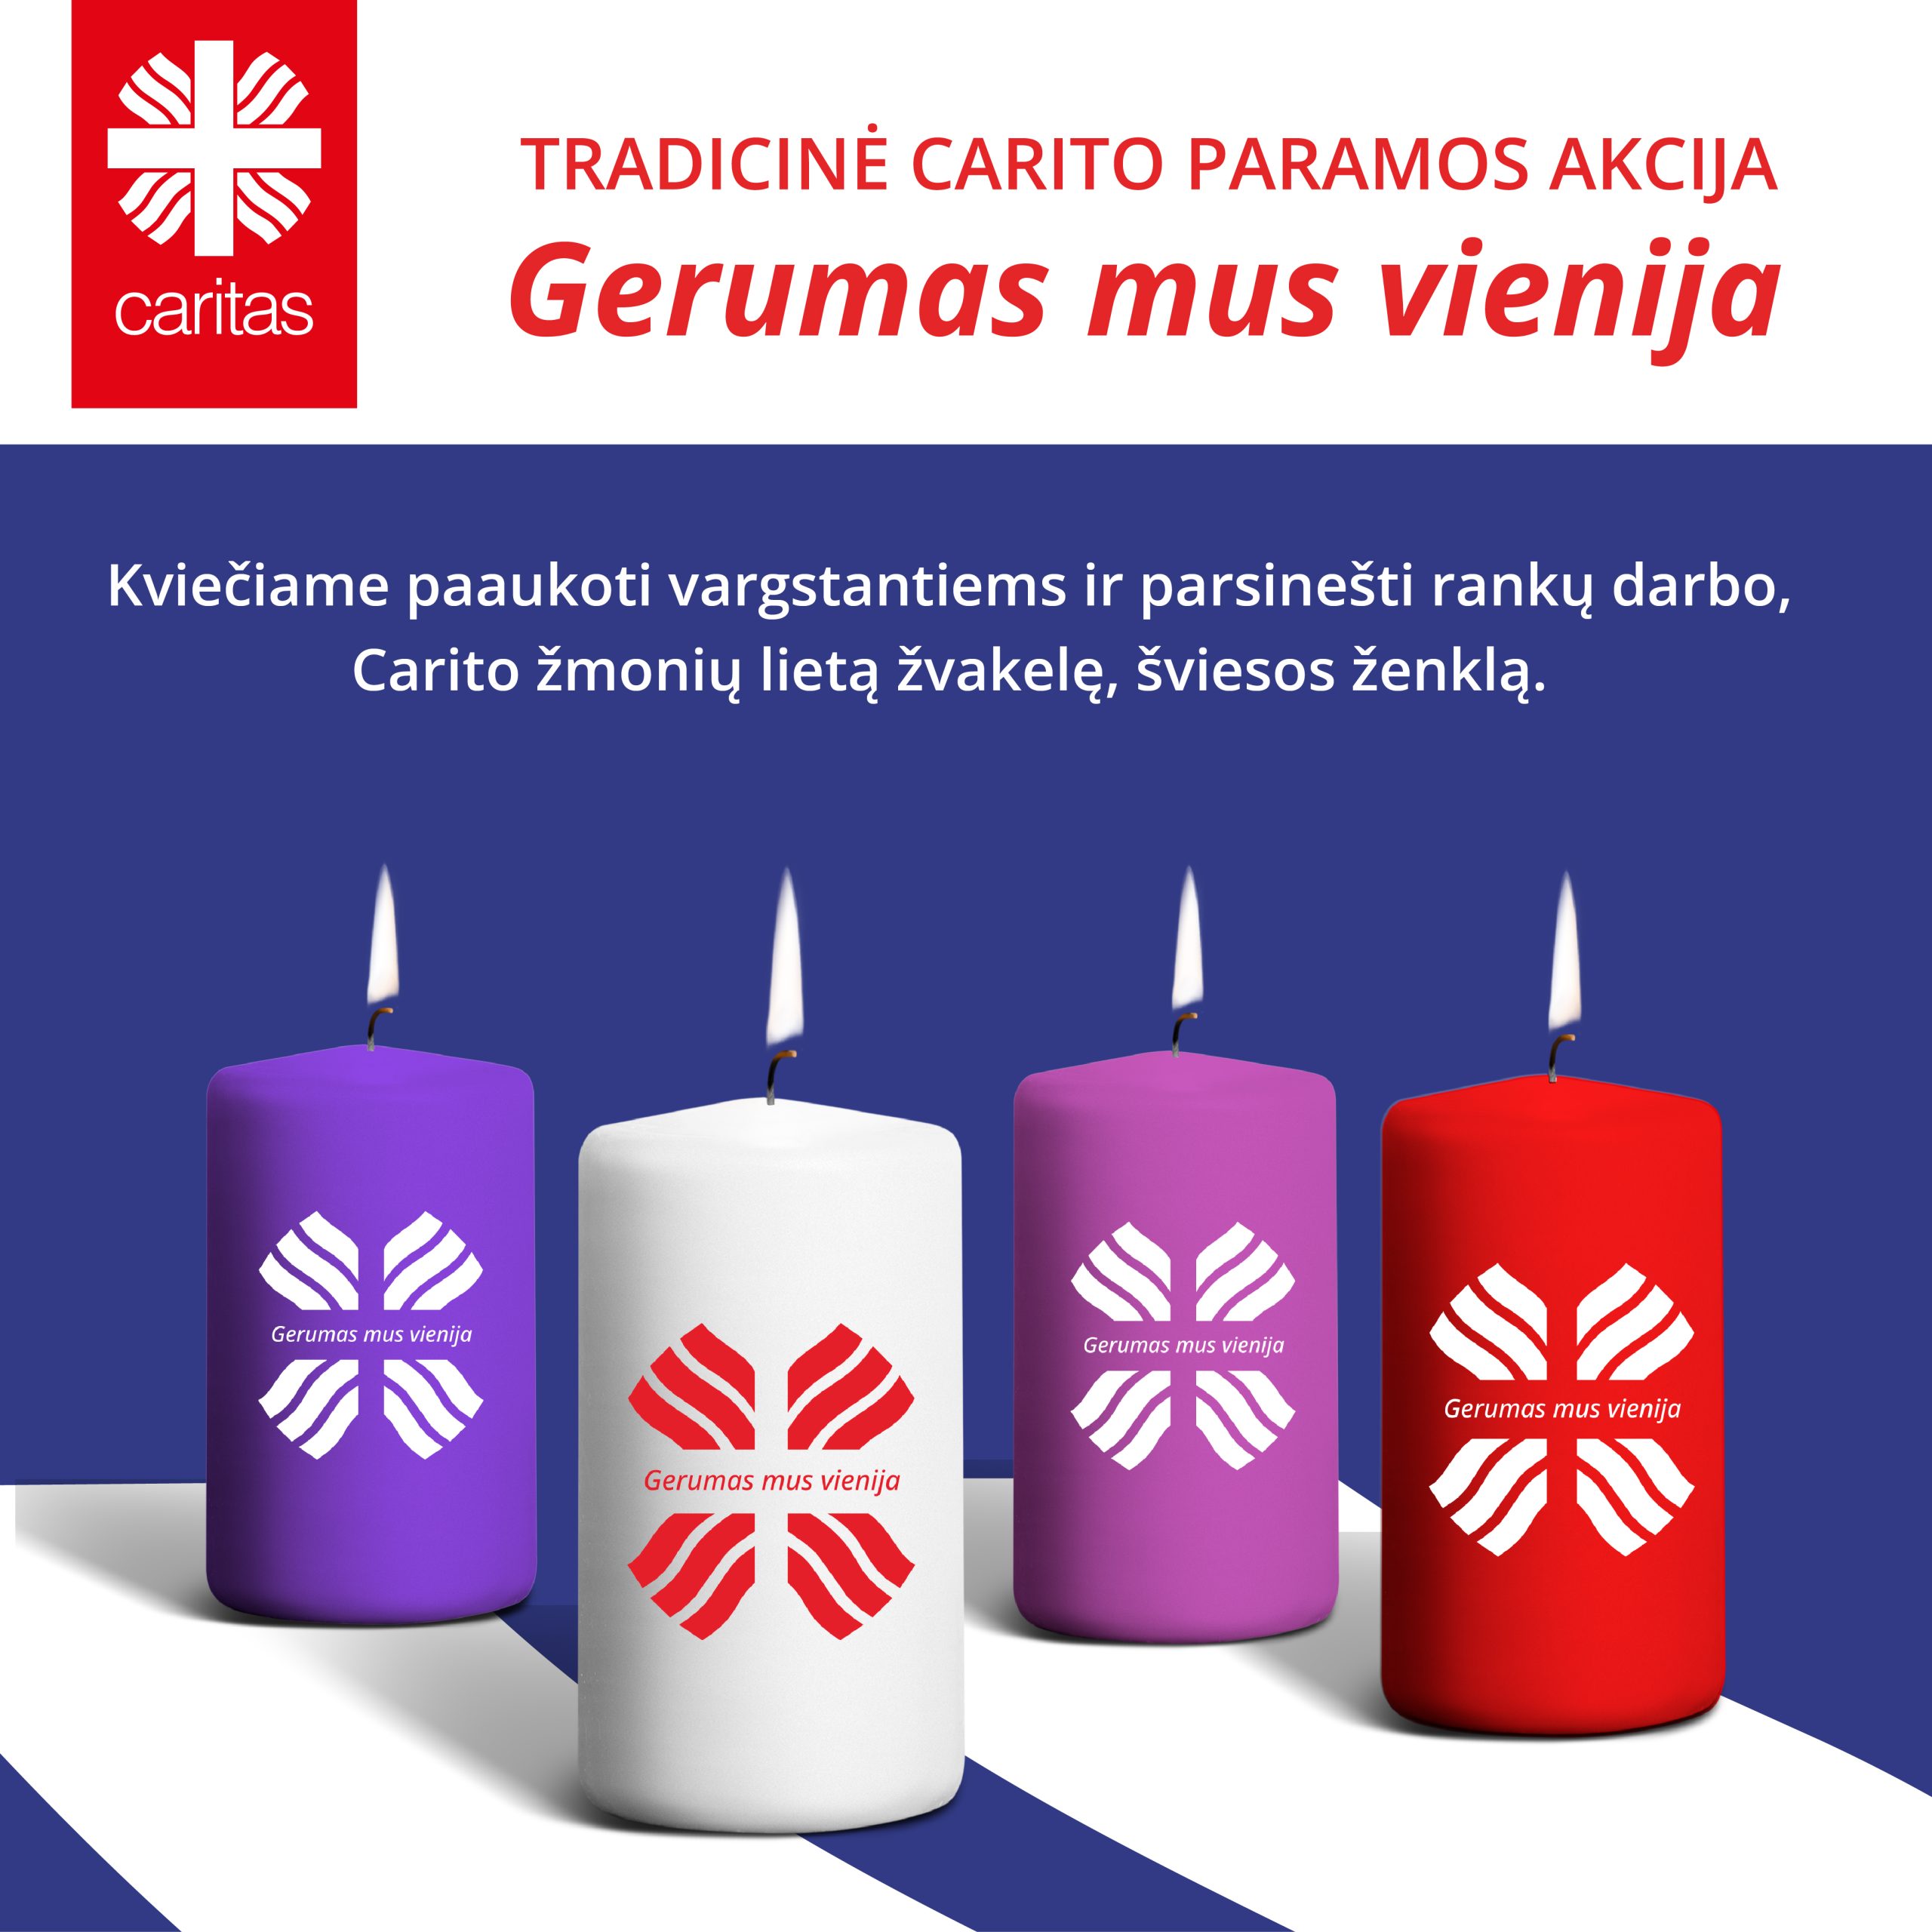 Į kelionę po Lietuvą Caritas išlydi 80 tūkst. gerumo žvakelių